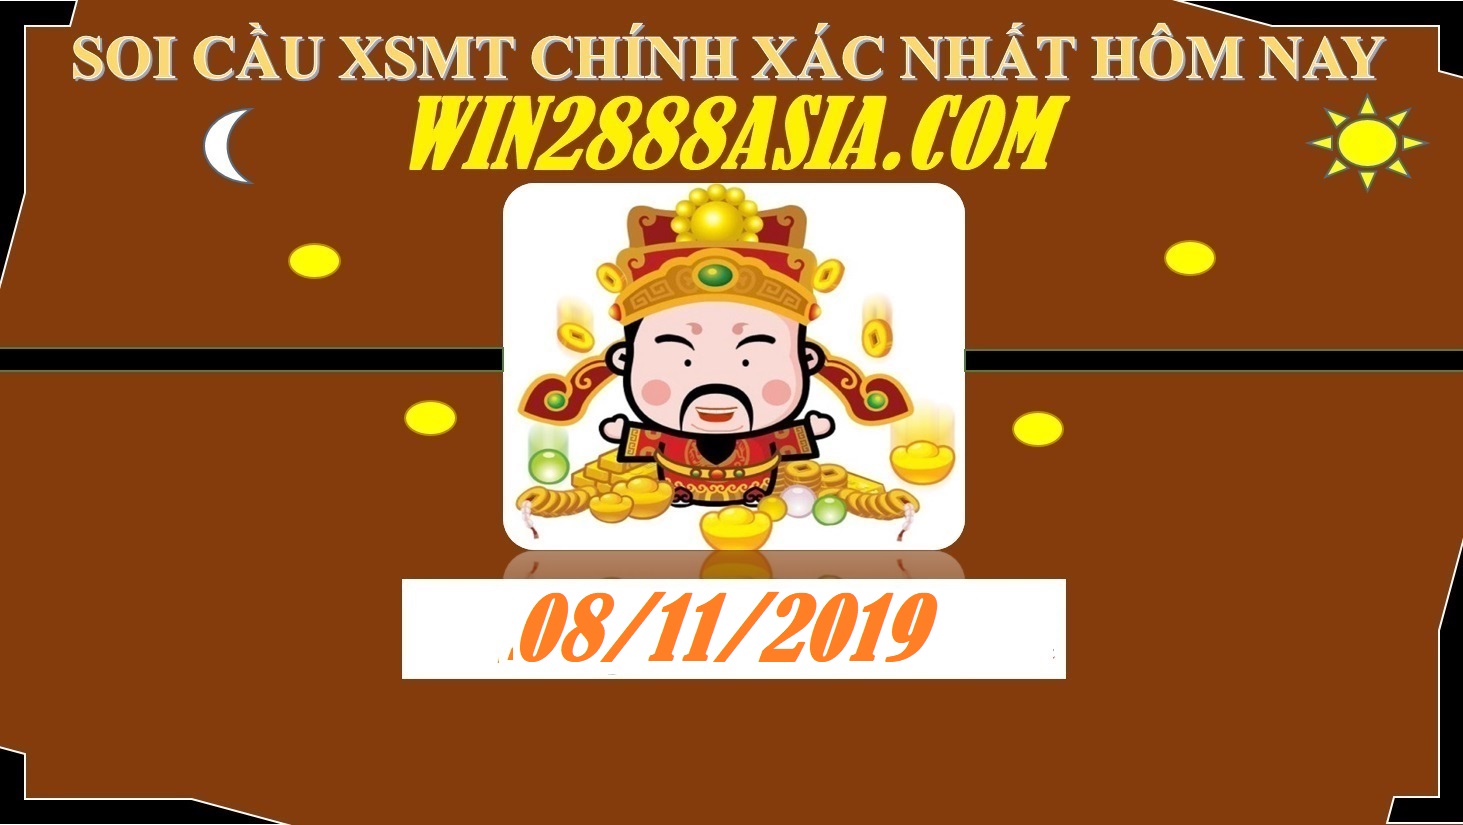 Soi cầu XSMT 8-11-2019 Win2888